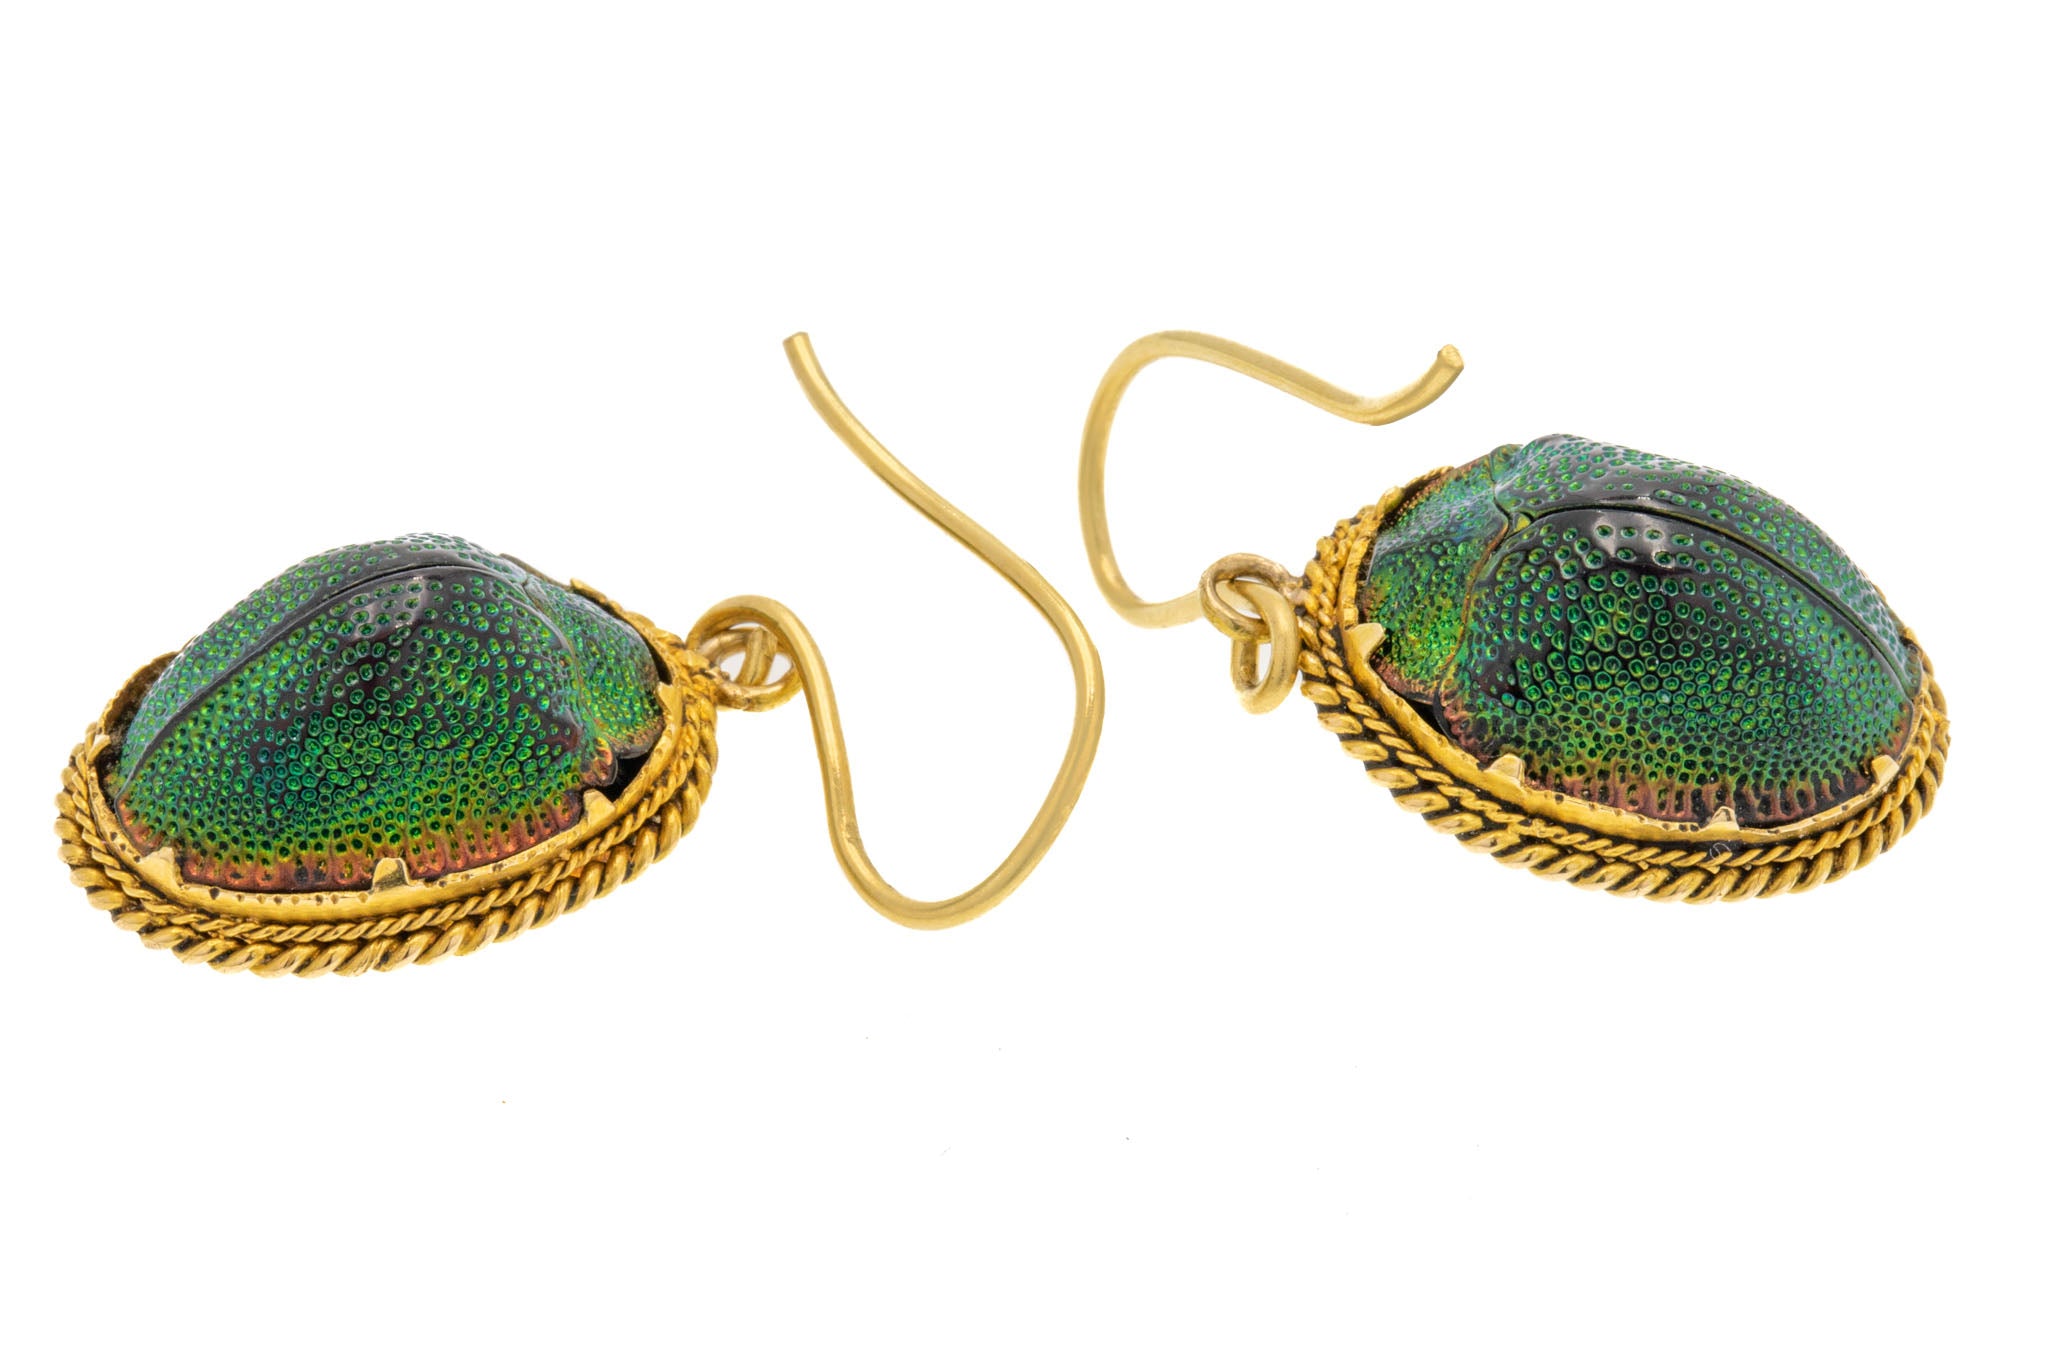 Bronze Silver Scarab Earrings  Egyptian Revival Winged Beetle Dangles   Vintage Look Jewelry  Dangle Earrings  AliExpress